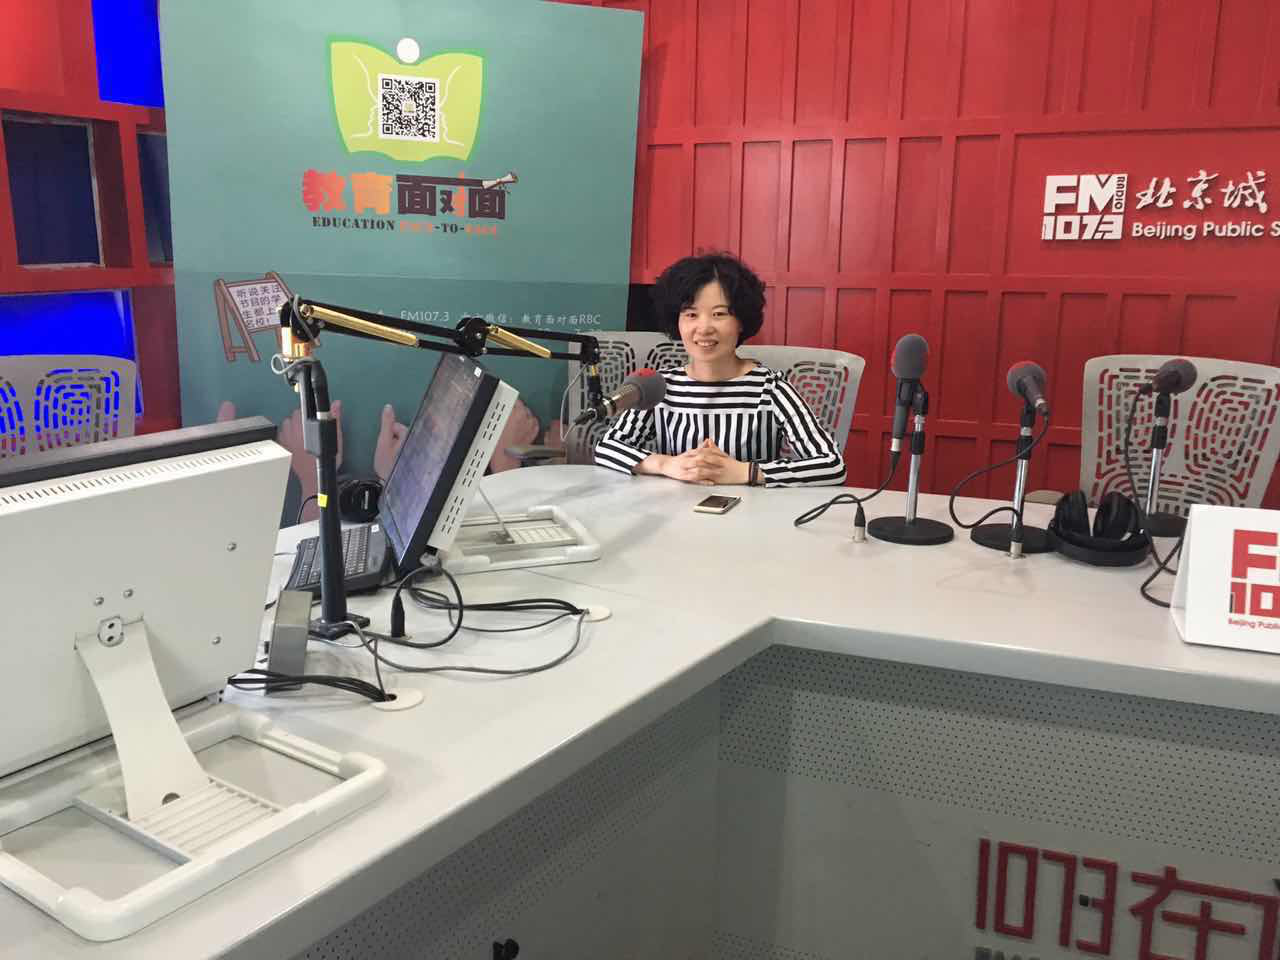 美房美邦走进北京广播电视台,谈谈墙纸哪些事